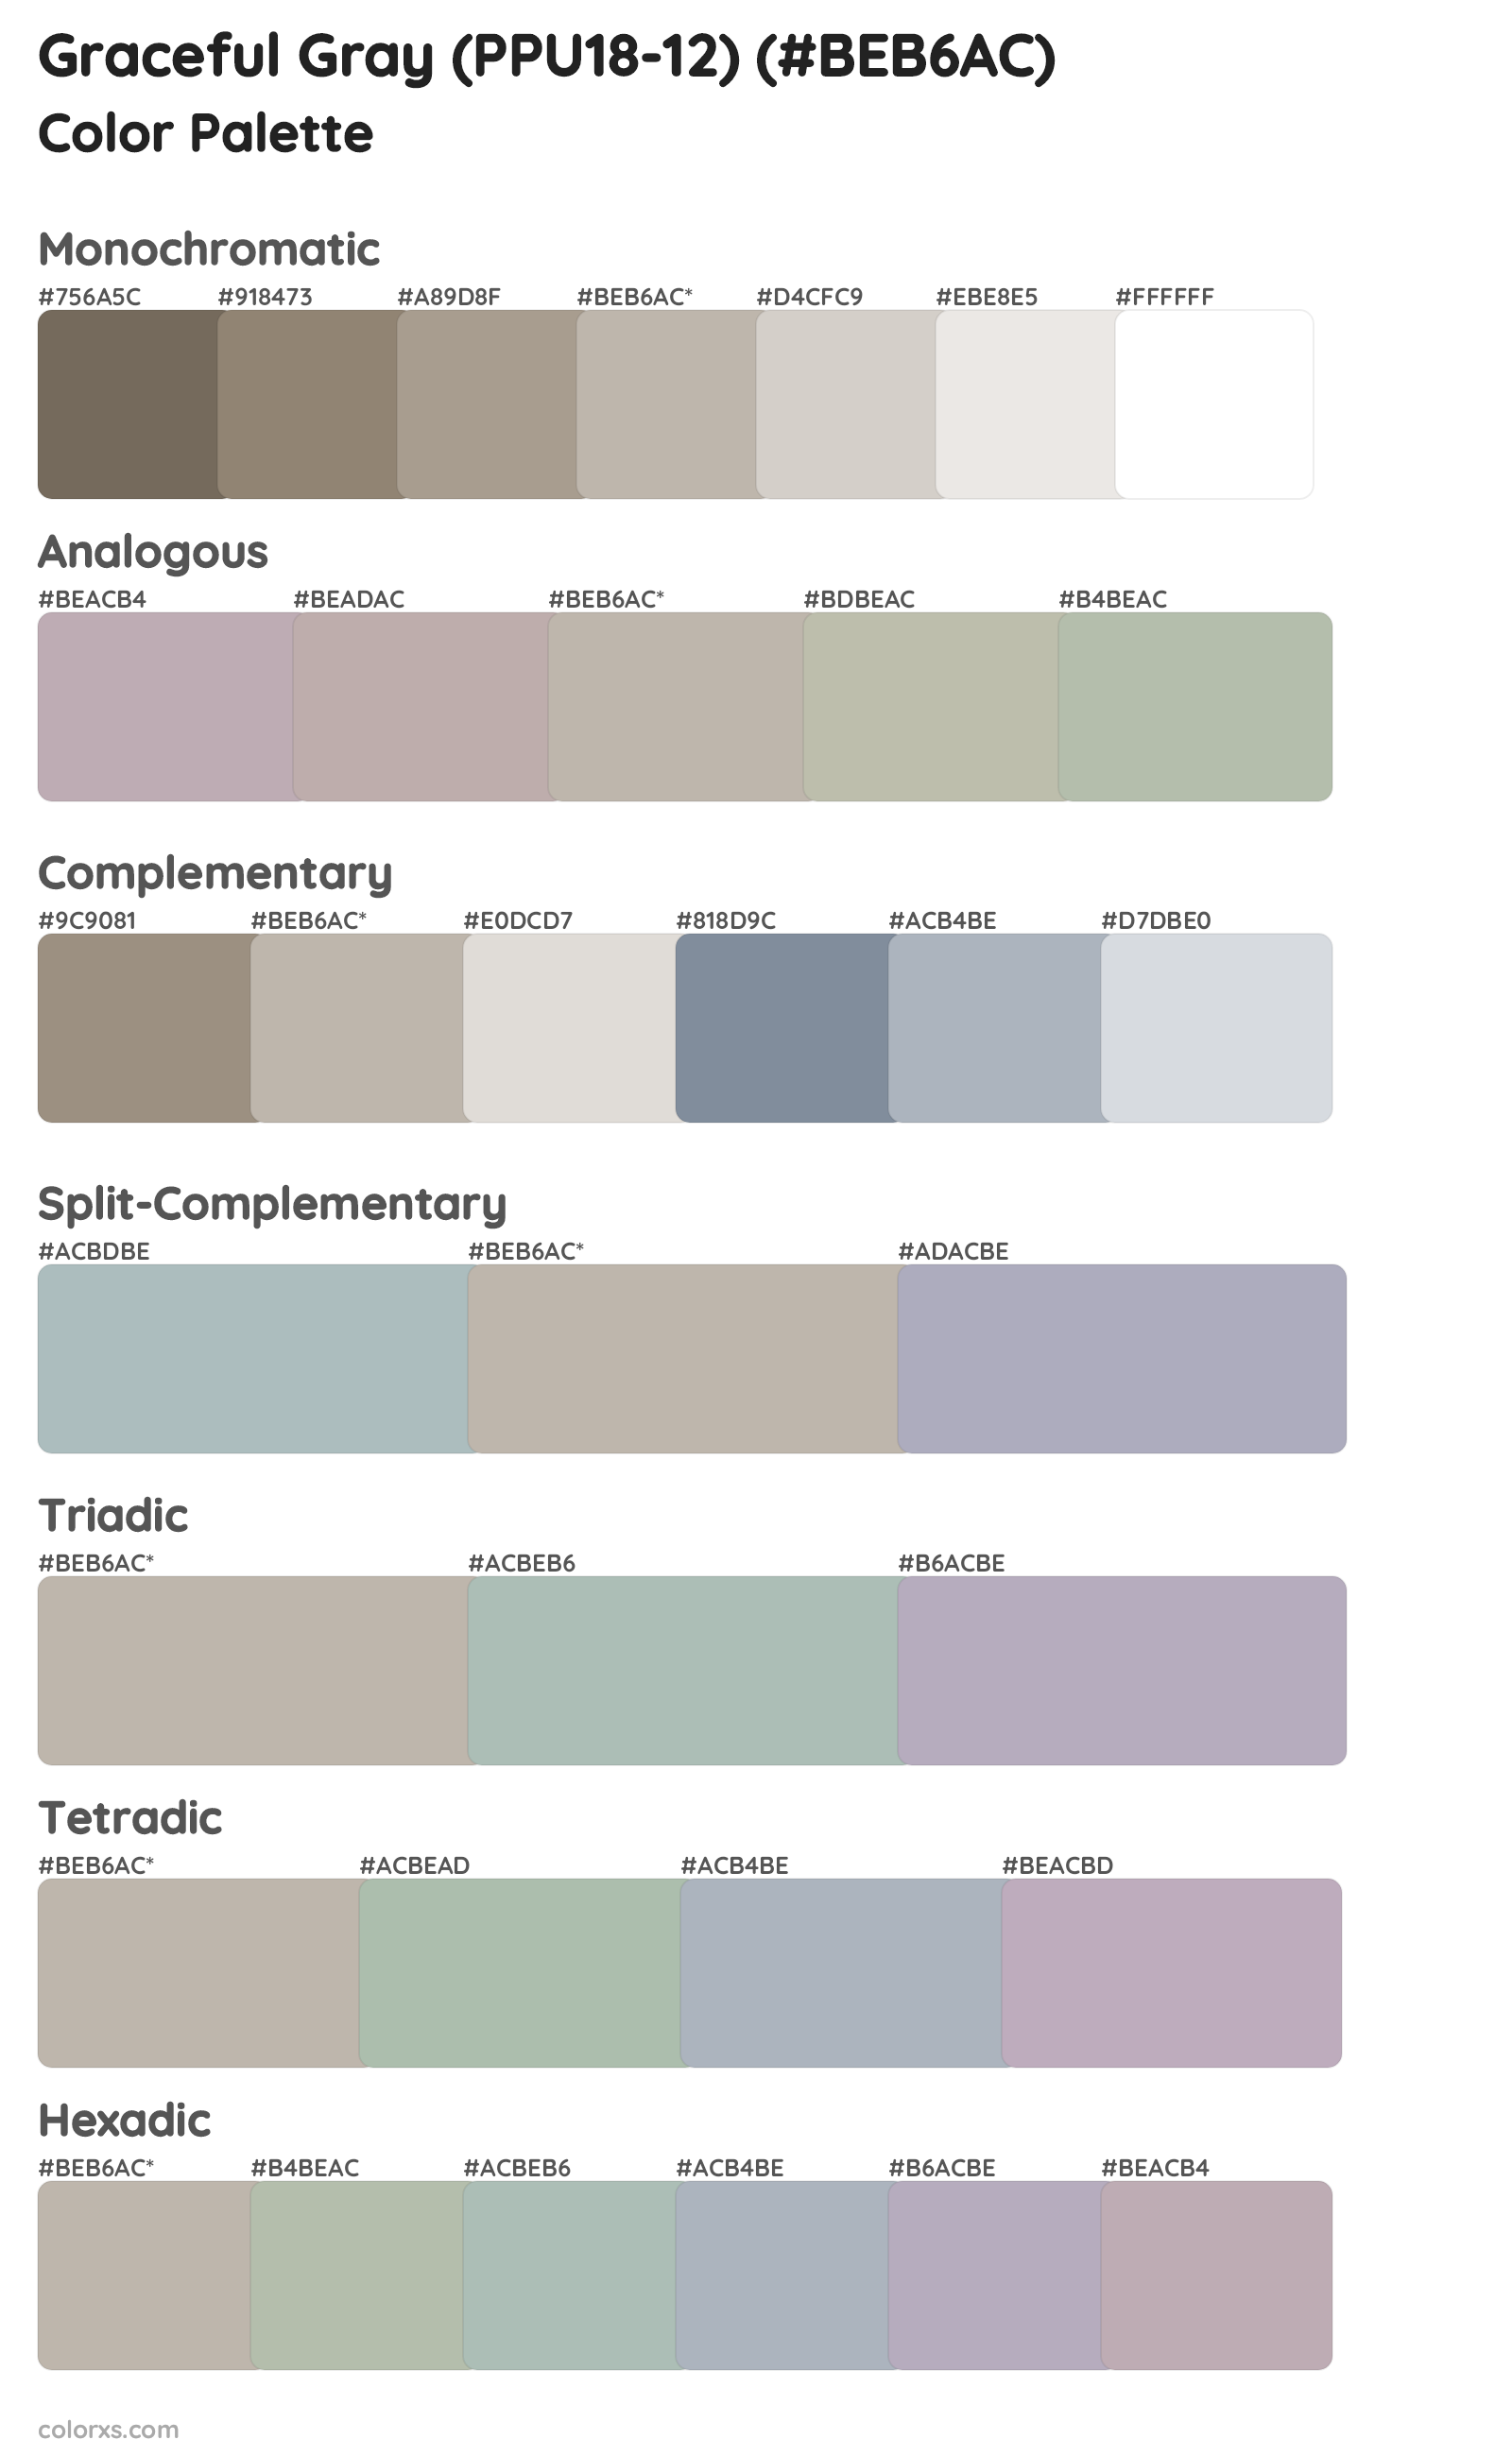 Graceful Gray (PPU18-12) Color Scheme Palettes